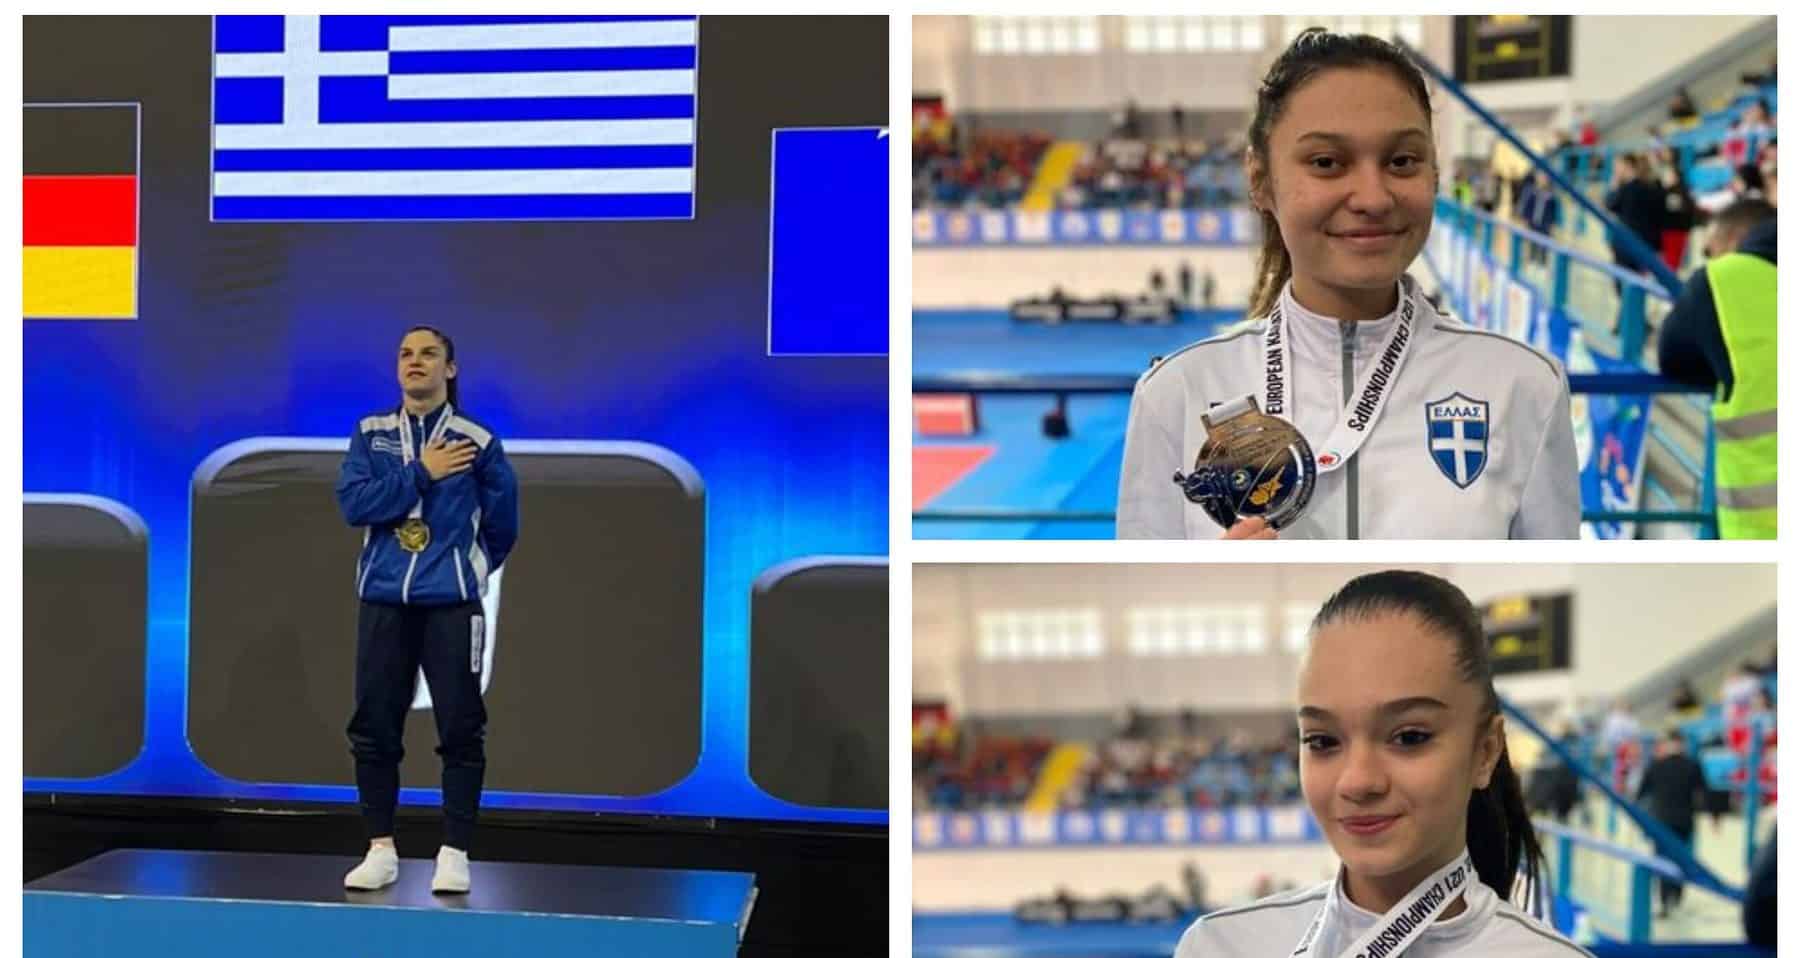 Χρυσό μετάλλιο η 18χρονη Χρυσοπούλου στο Ευρωπαϊκό Πρωτάθλημα του καράτε